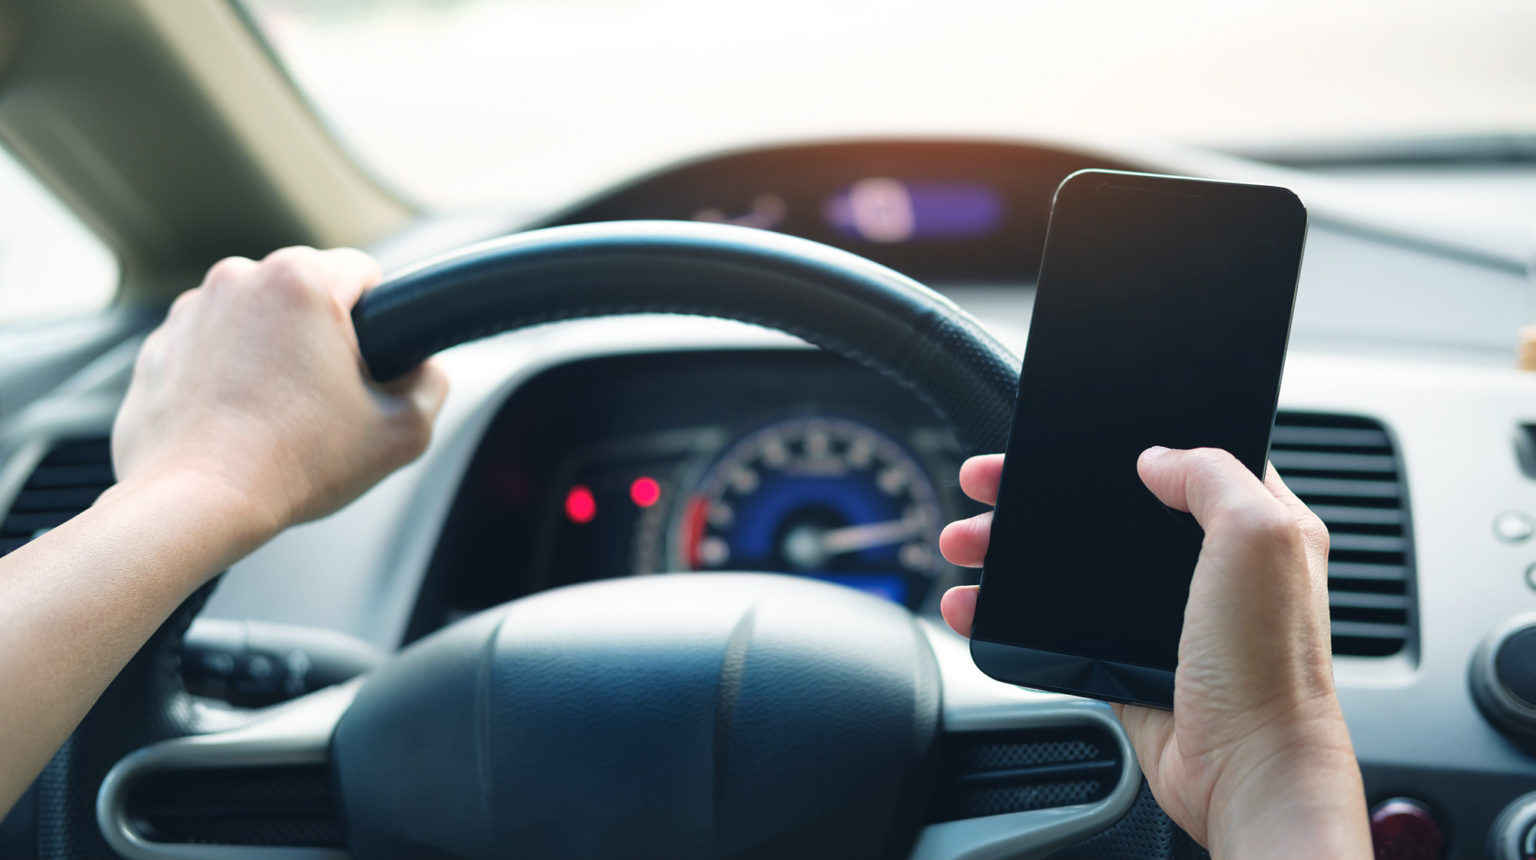 قوانین و مبلغ جریمه برای صحبت کردن با موبایل هنگام رانندگی چقدر است؟